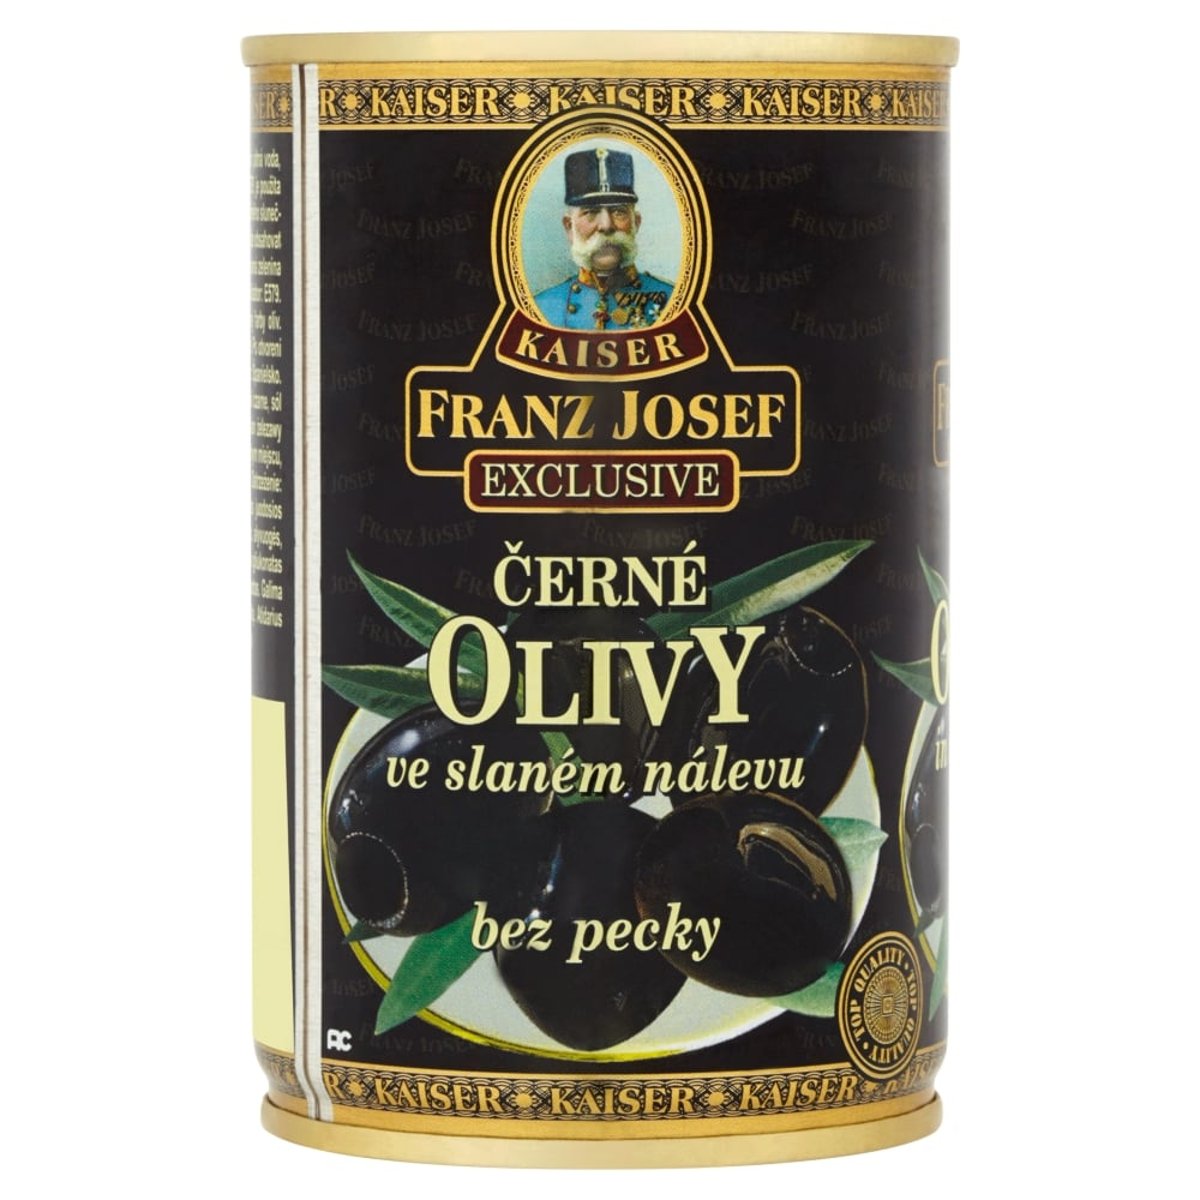 Franz Josef Kaiser Olivy černé bez pecky ve slaném nálevu